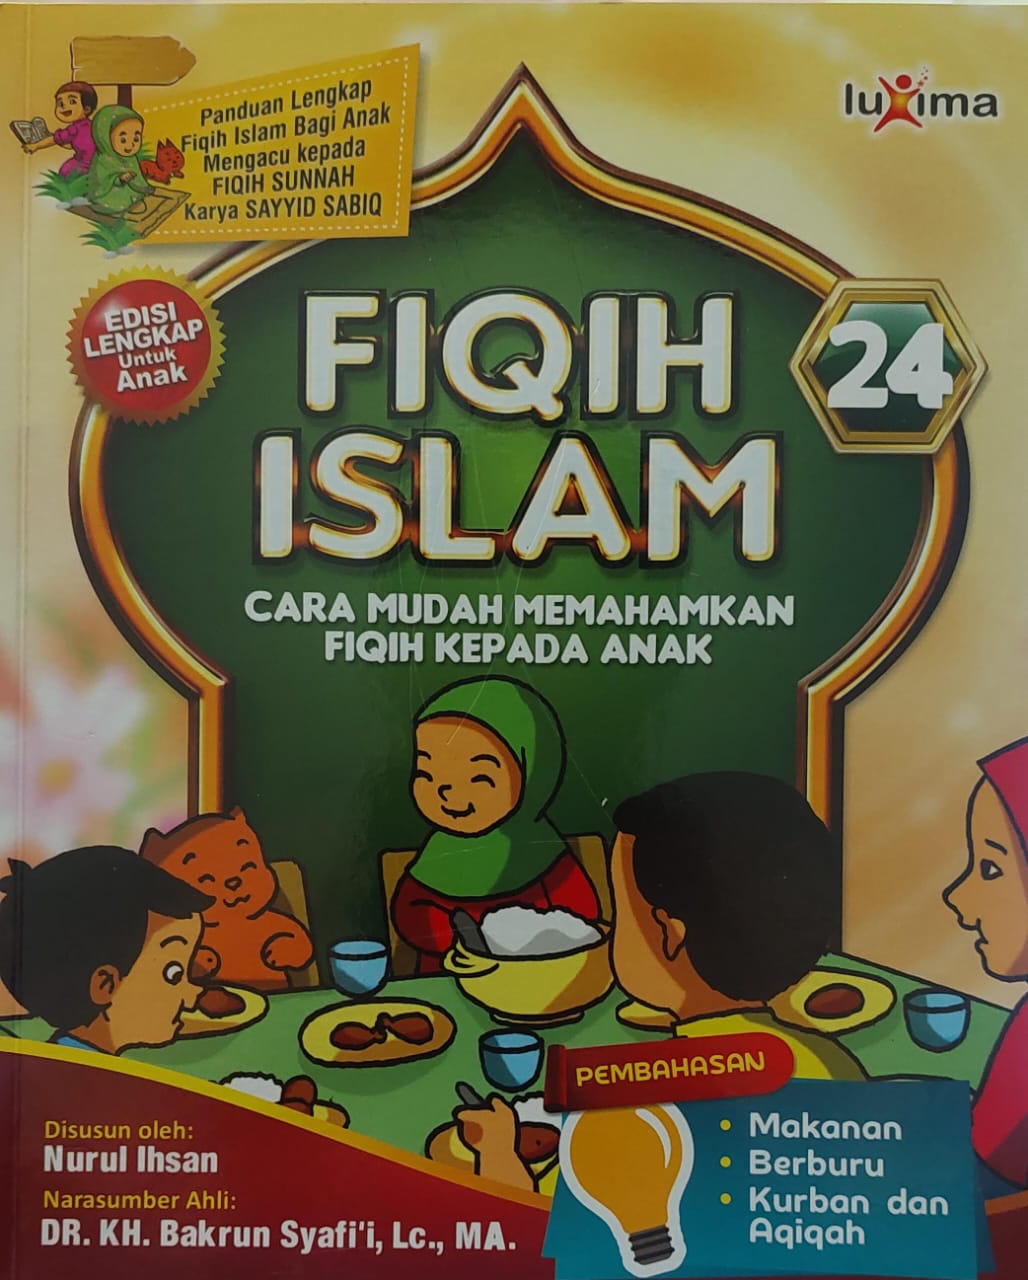 Fiqih islam jilid 24 :  cara mudah memahamkan fiqih kepada anak